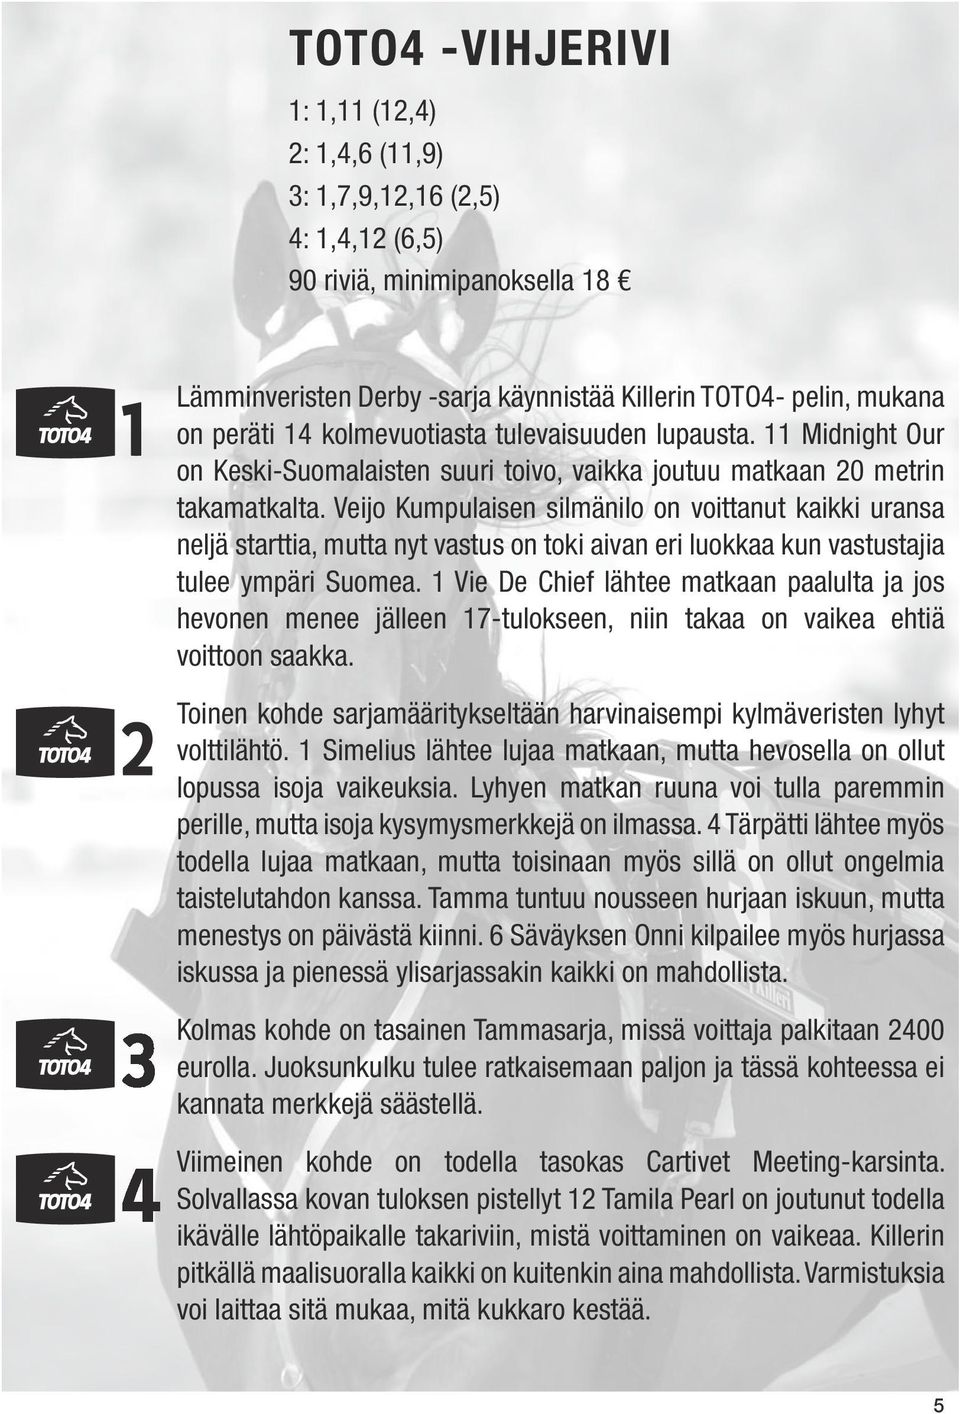 Veijo Kumpulaisen silmänilo on voittanut kaikki uransa neljä starttia, mutta nyt vastus on toki aivan eri luokkaa kun vastustajia tulee ympäri Suomea.